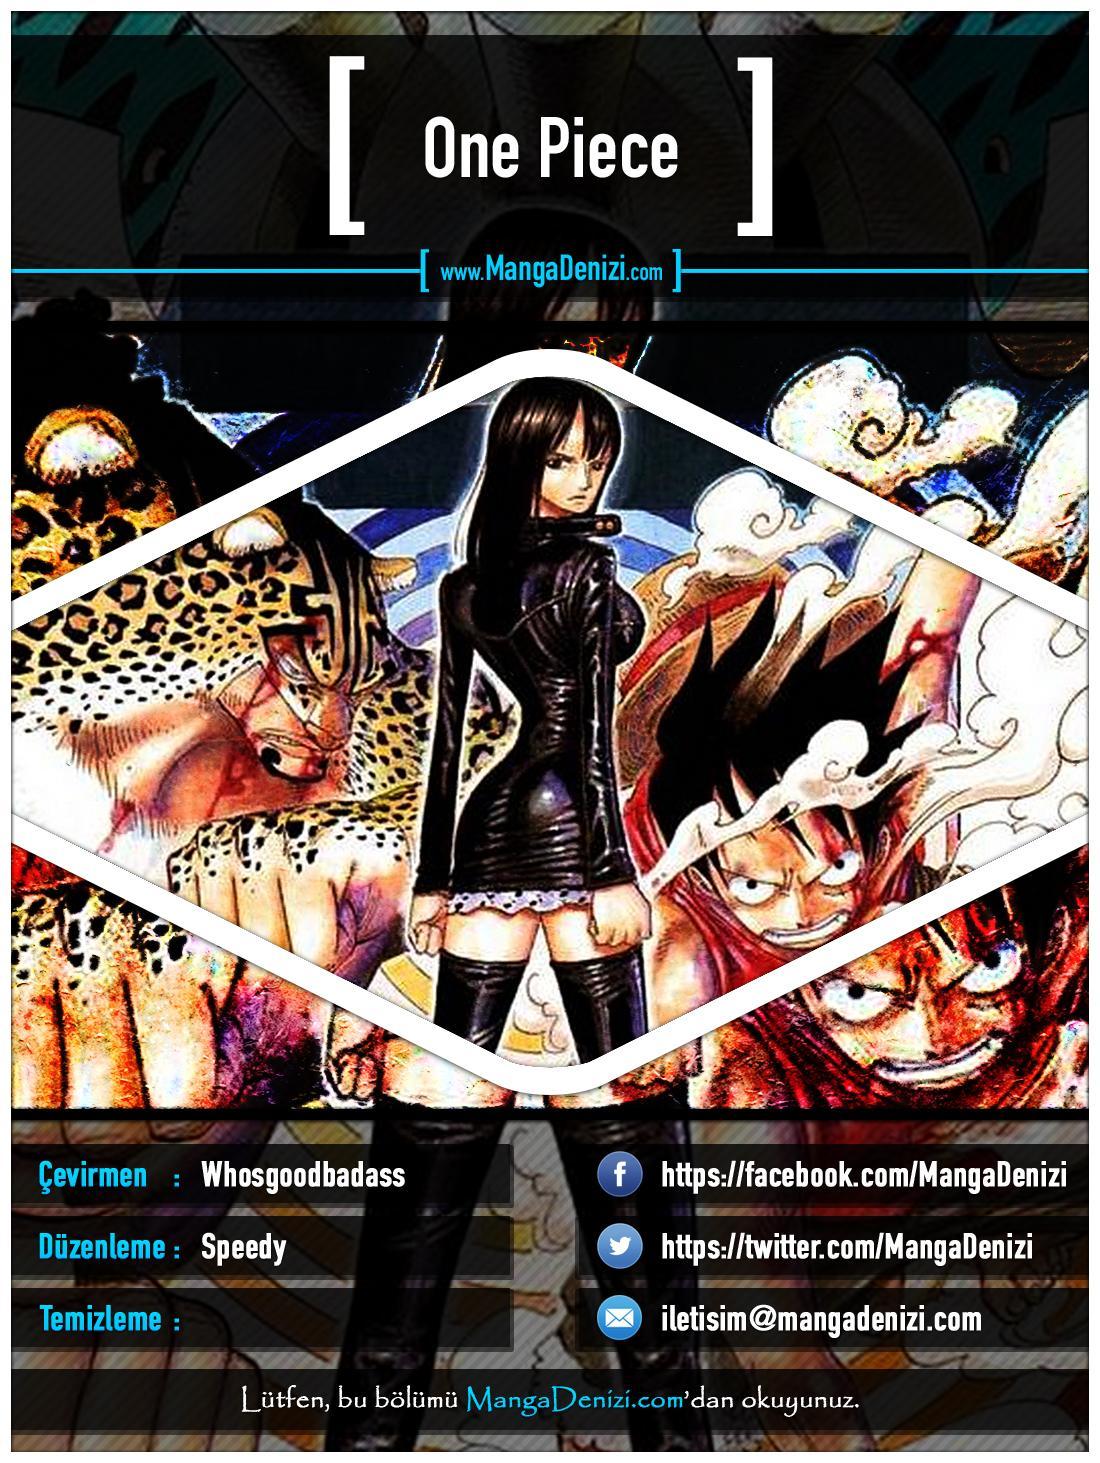 One Piece [Renkli] mangasının 0381 bölümünün 1. sayfasını okuyorsunuz.